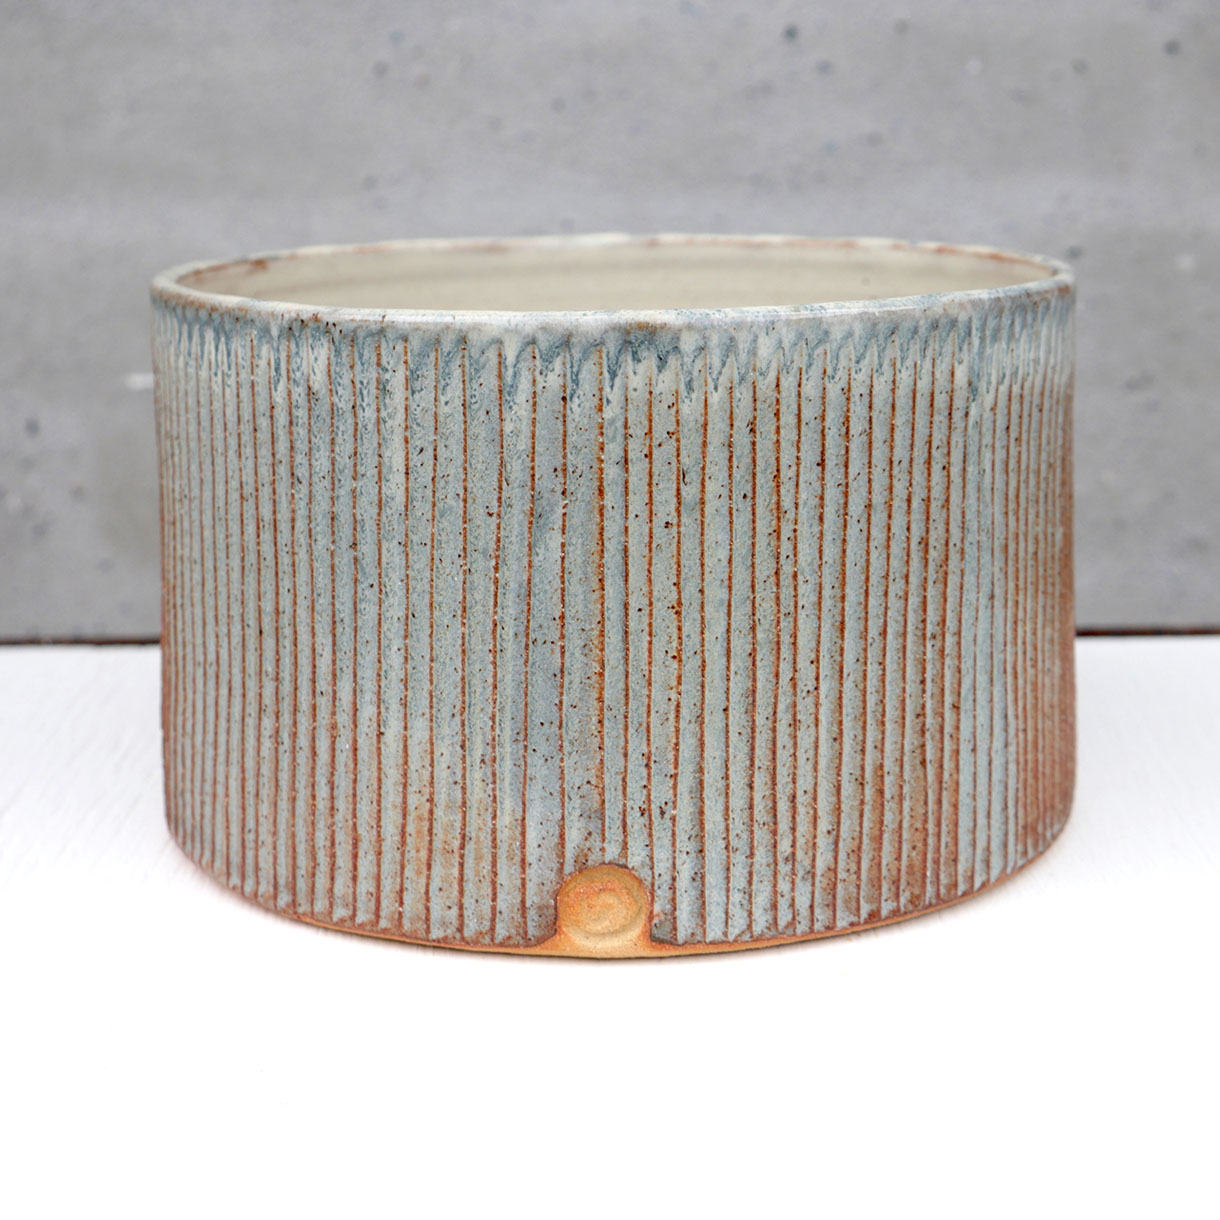 Keramik cylinder krukke af keramiker Pernille Buch. Krukken er blå og orange udvendigt og lys sandfarvet indvendigt. Krukken gives som ildsjælspris af Samsø kommune i en 5 årig periode fra, 2020 til 2021.